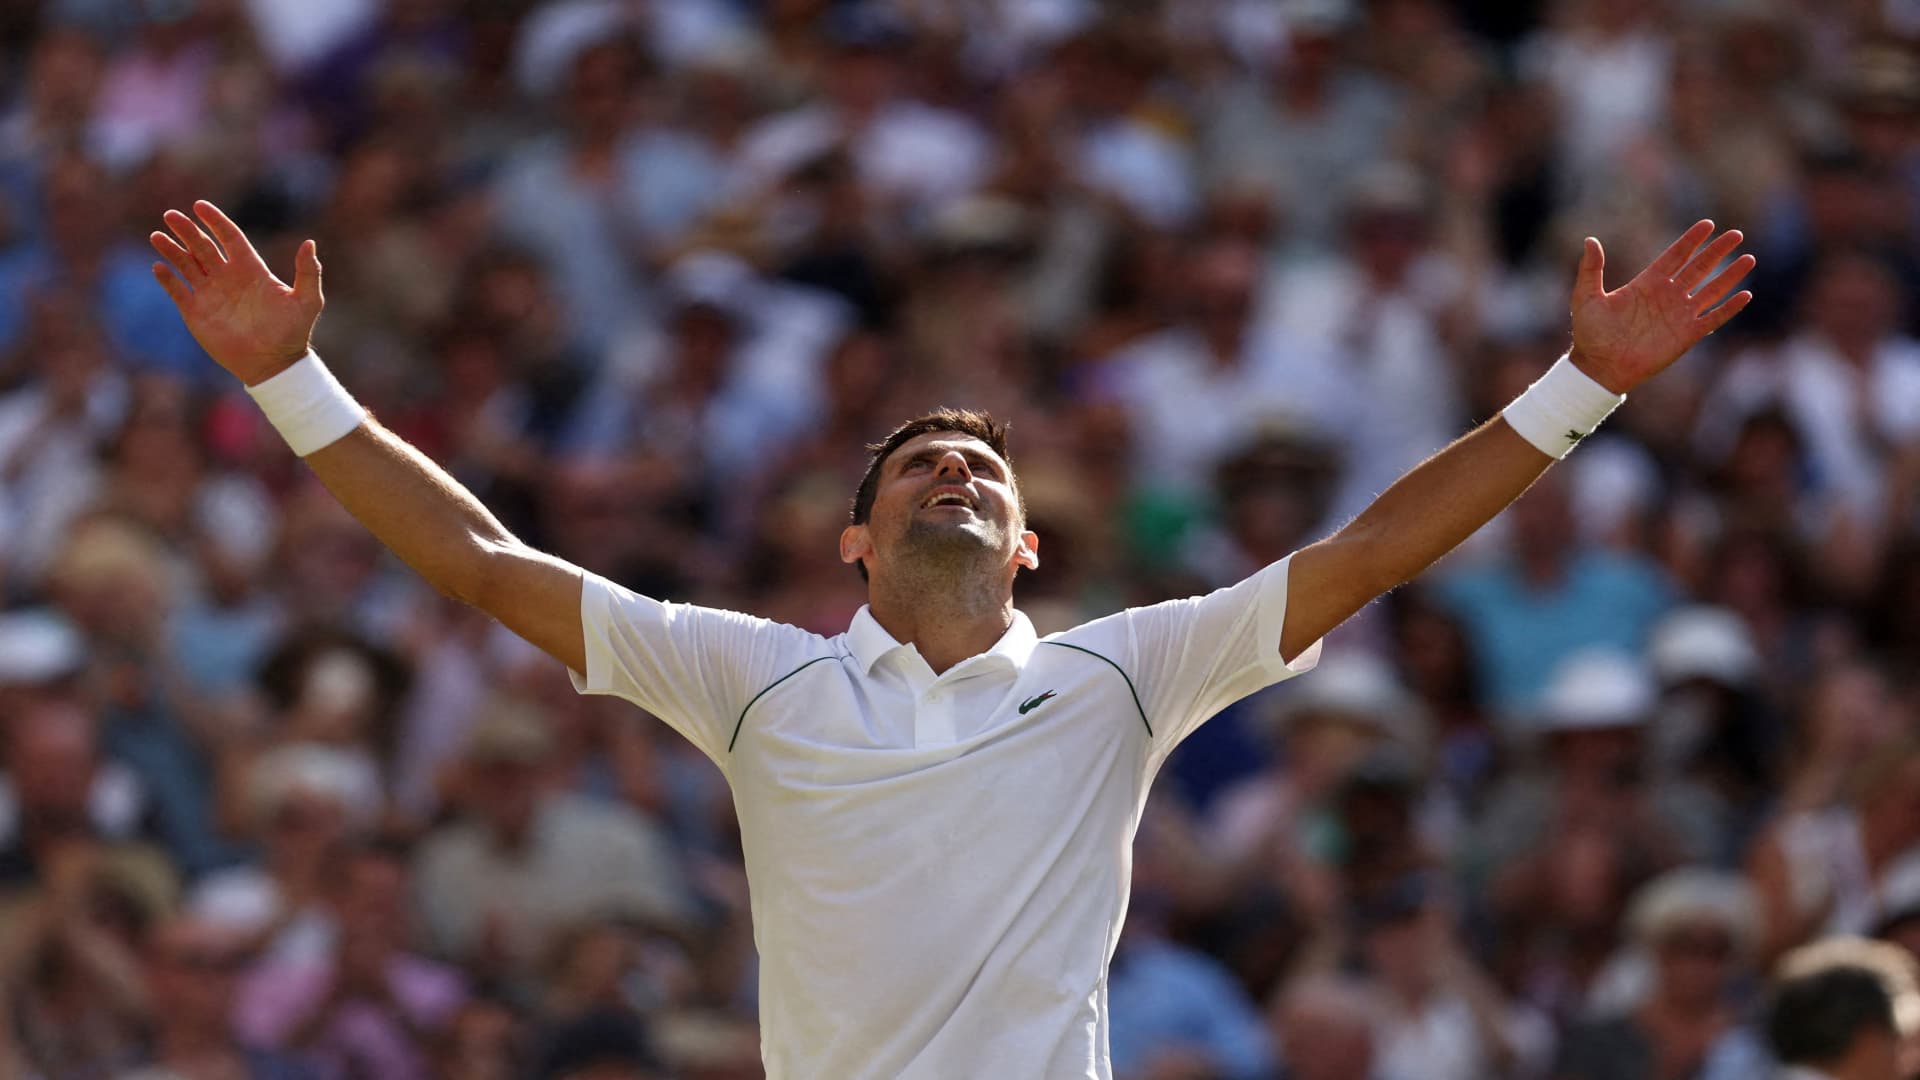 Novak Djokovic beats Nick Kyrgios for 7th Wimbledon title